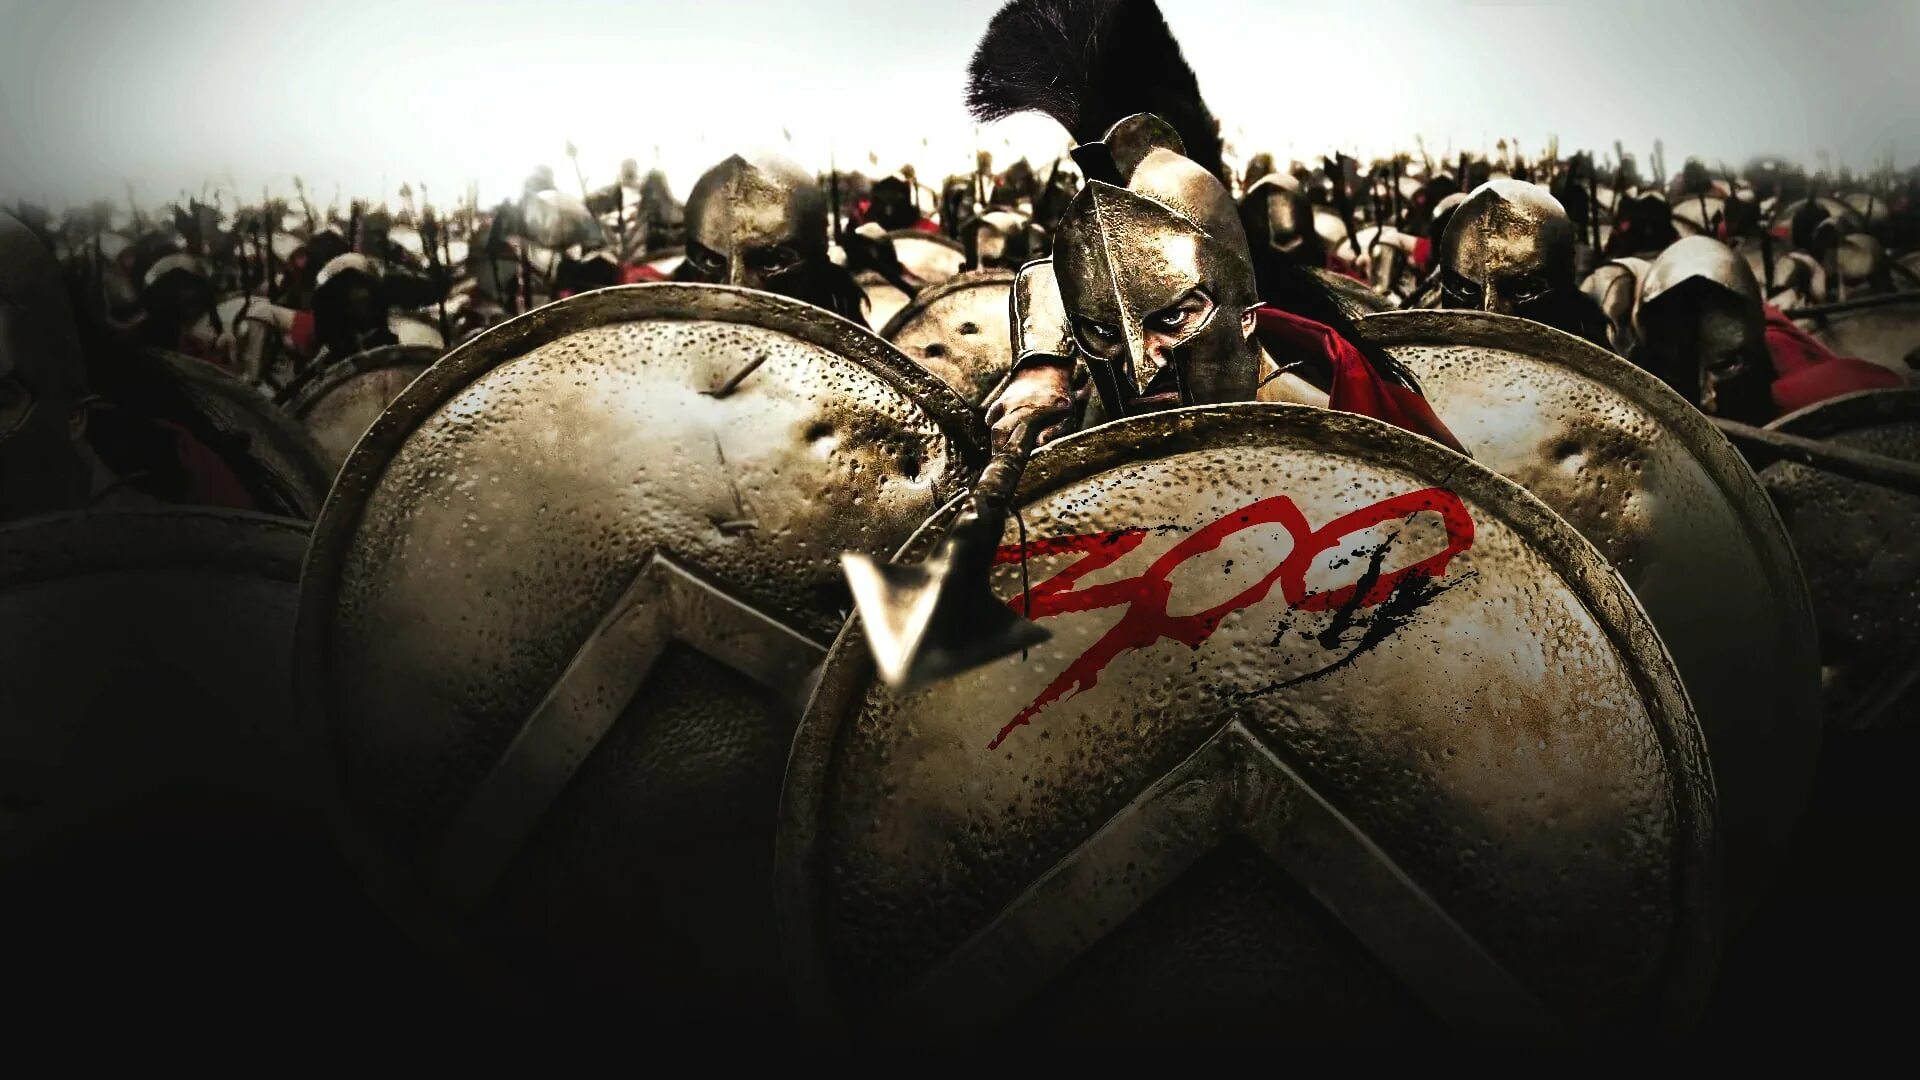 300 Спартанцев это Спарта. Какой подвиг совершили спартанцы